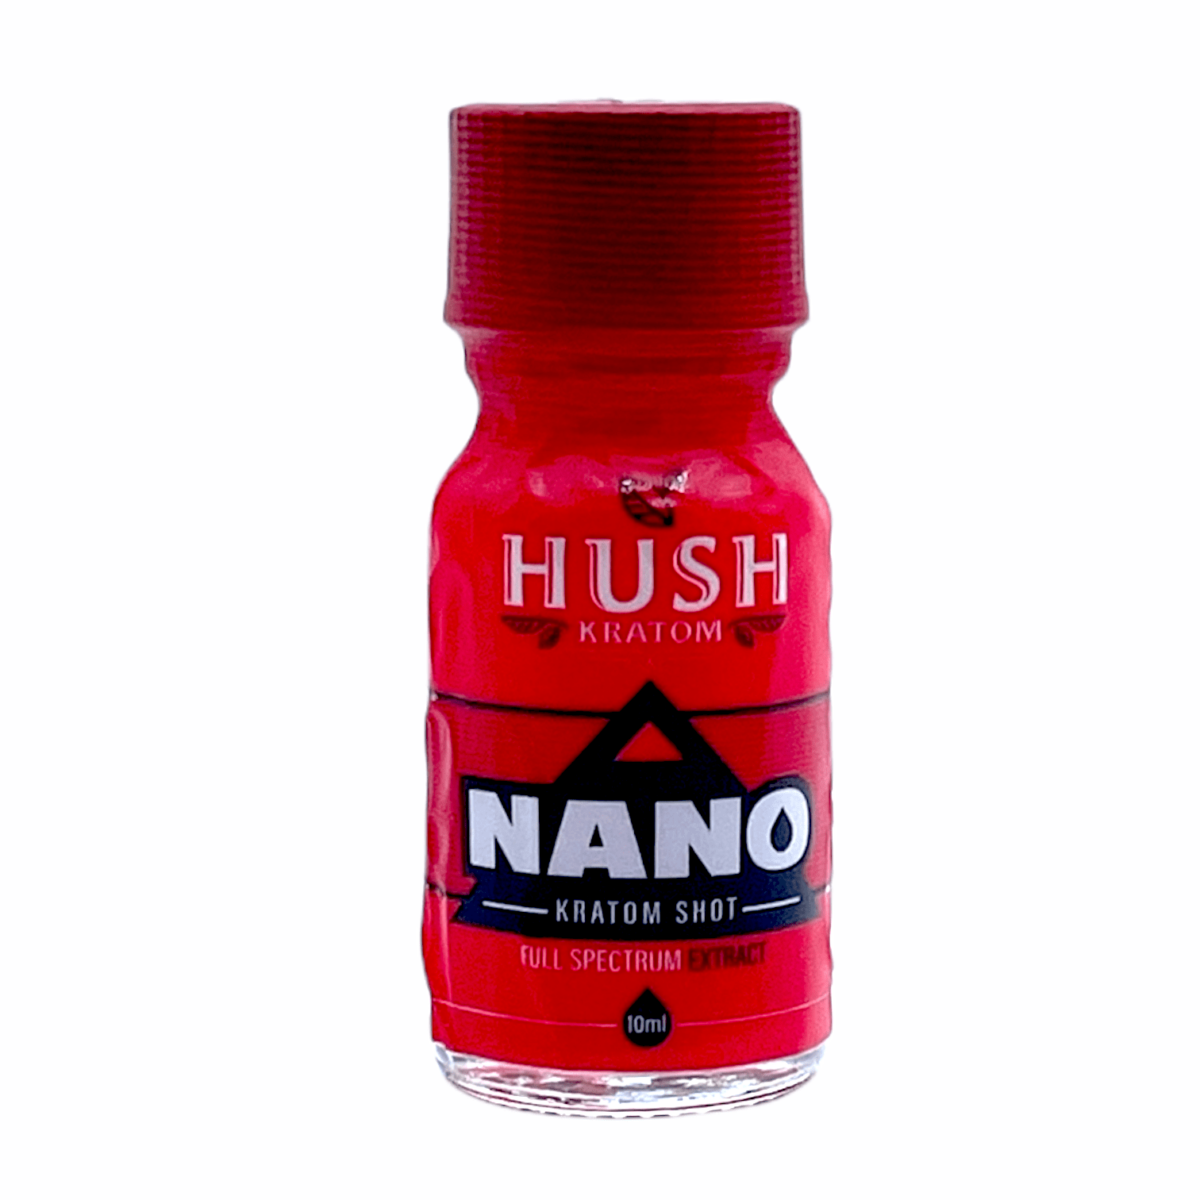 HUSH NANO Kratom Extract Liquid Shot – 10ml